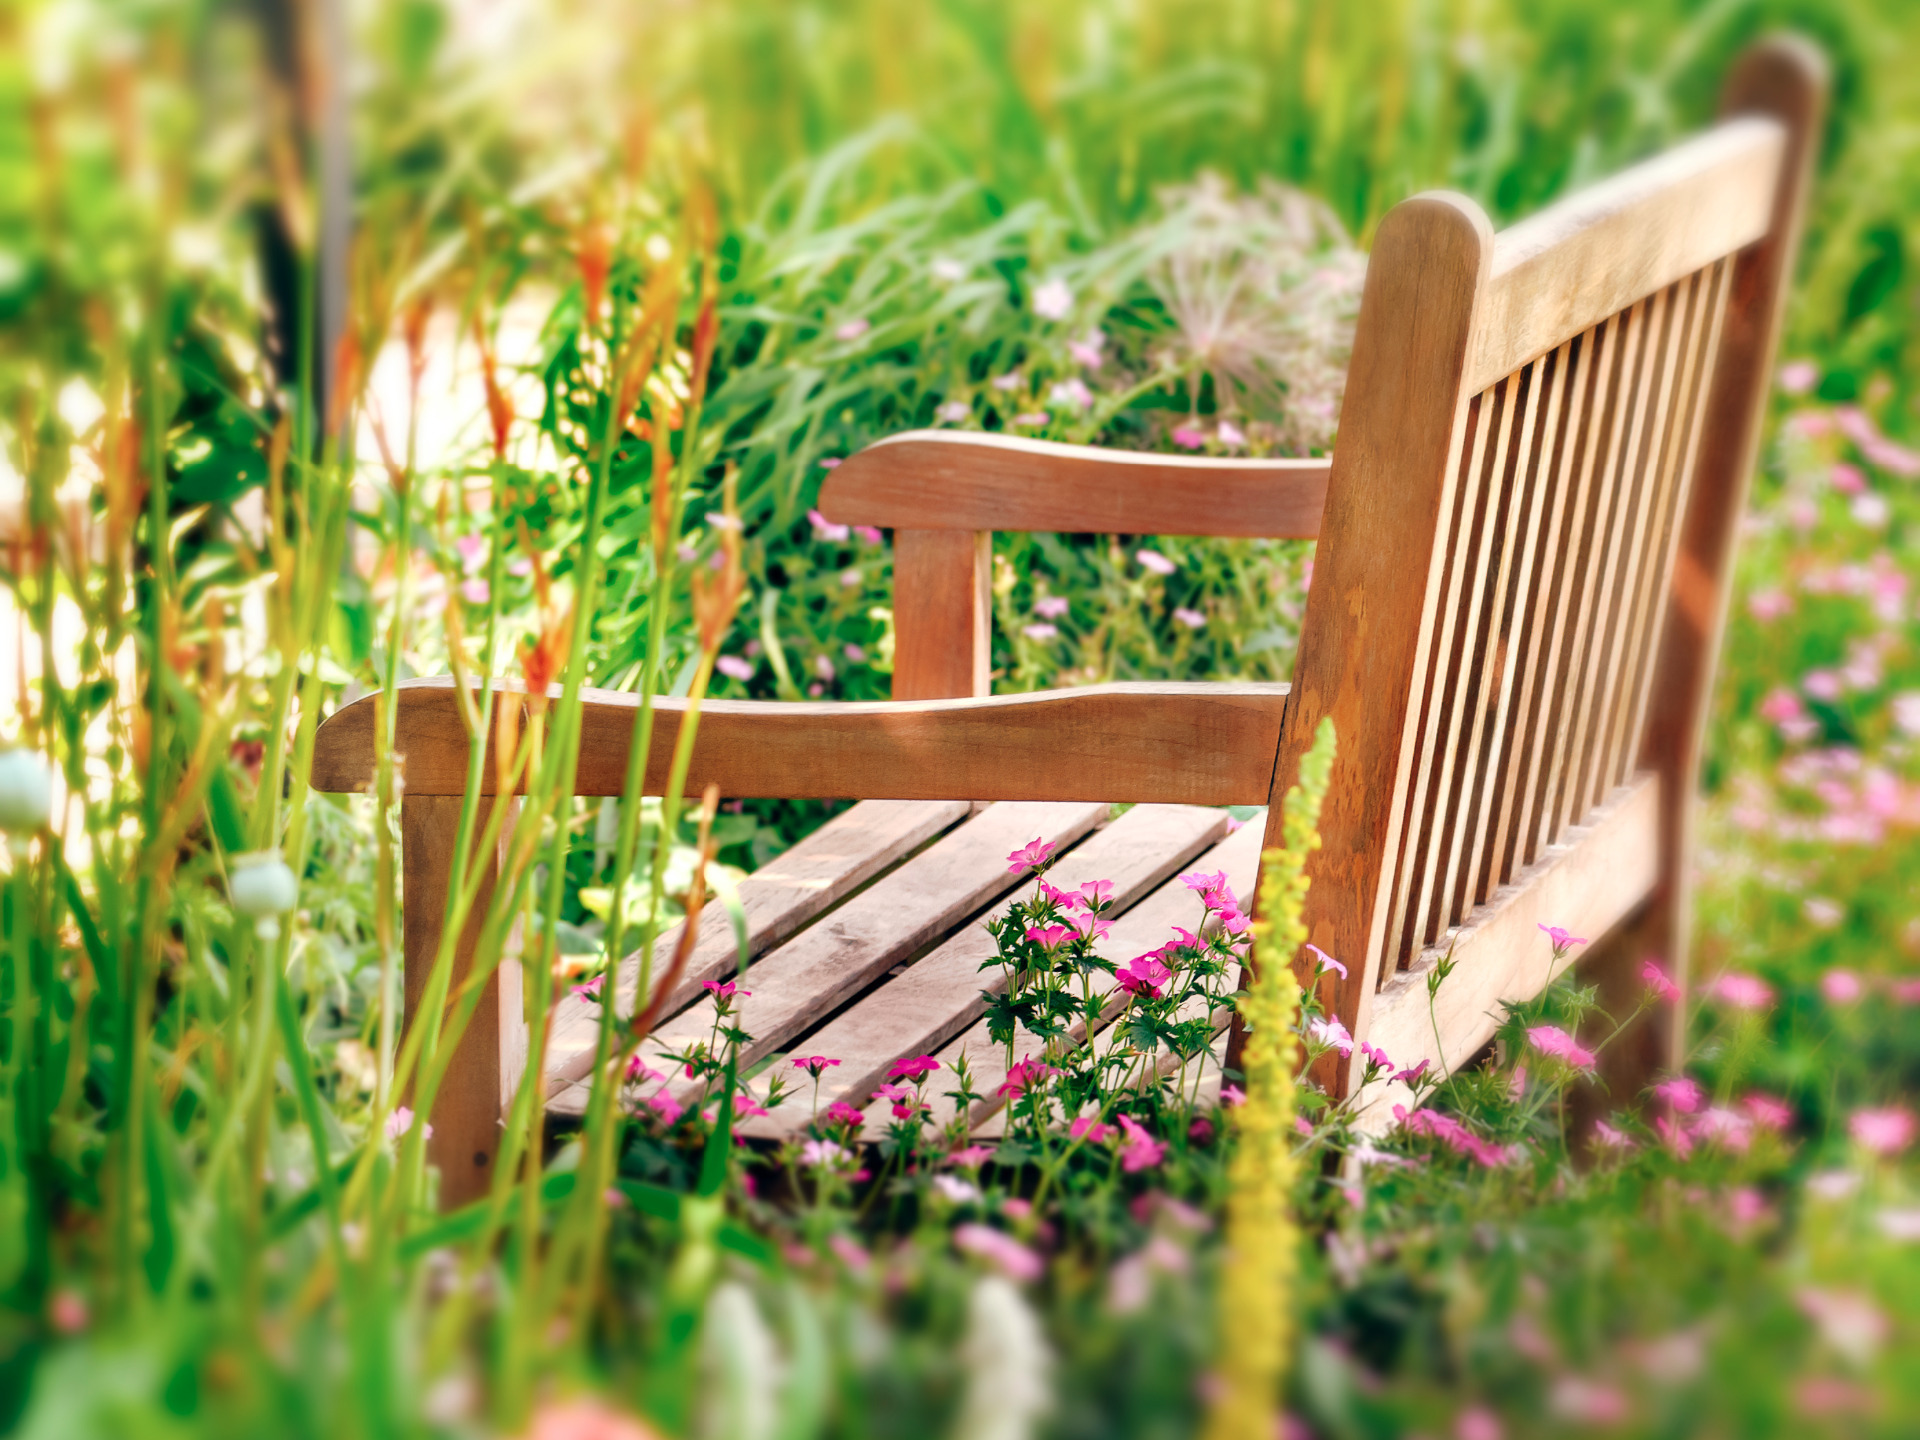 wooden garden bench in grass and wild flowers